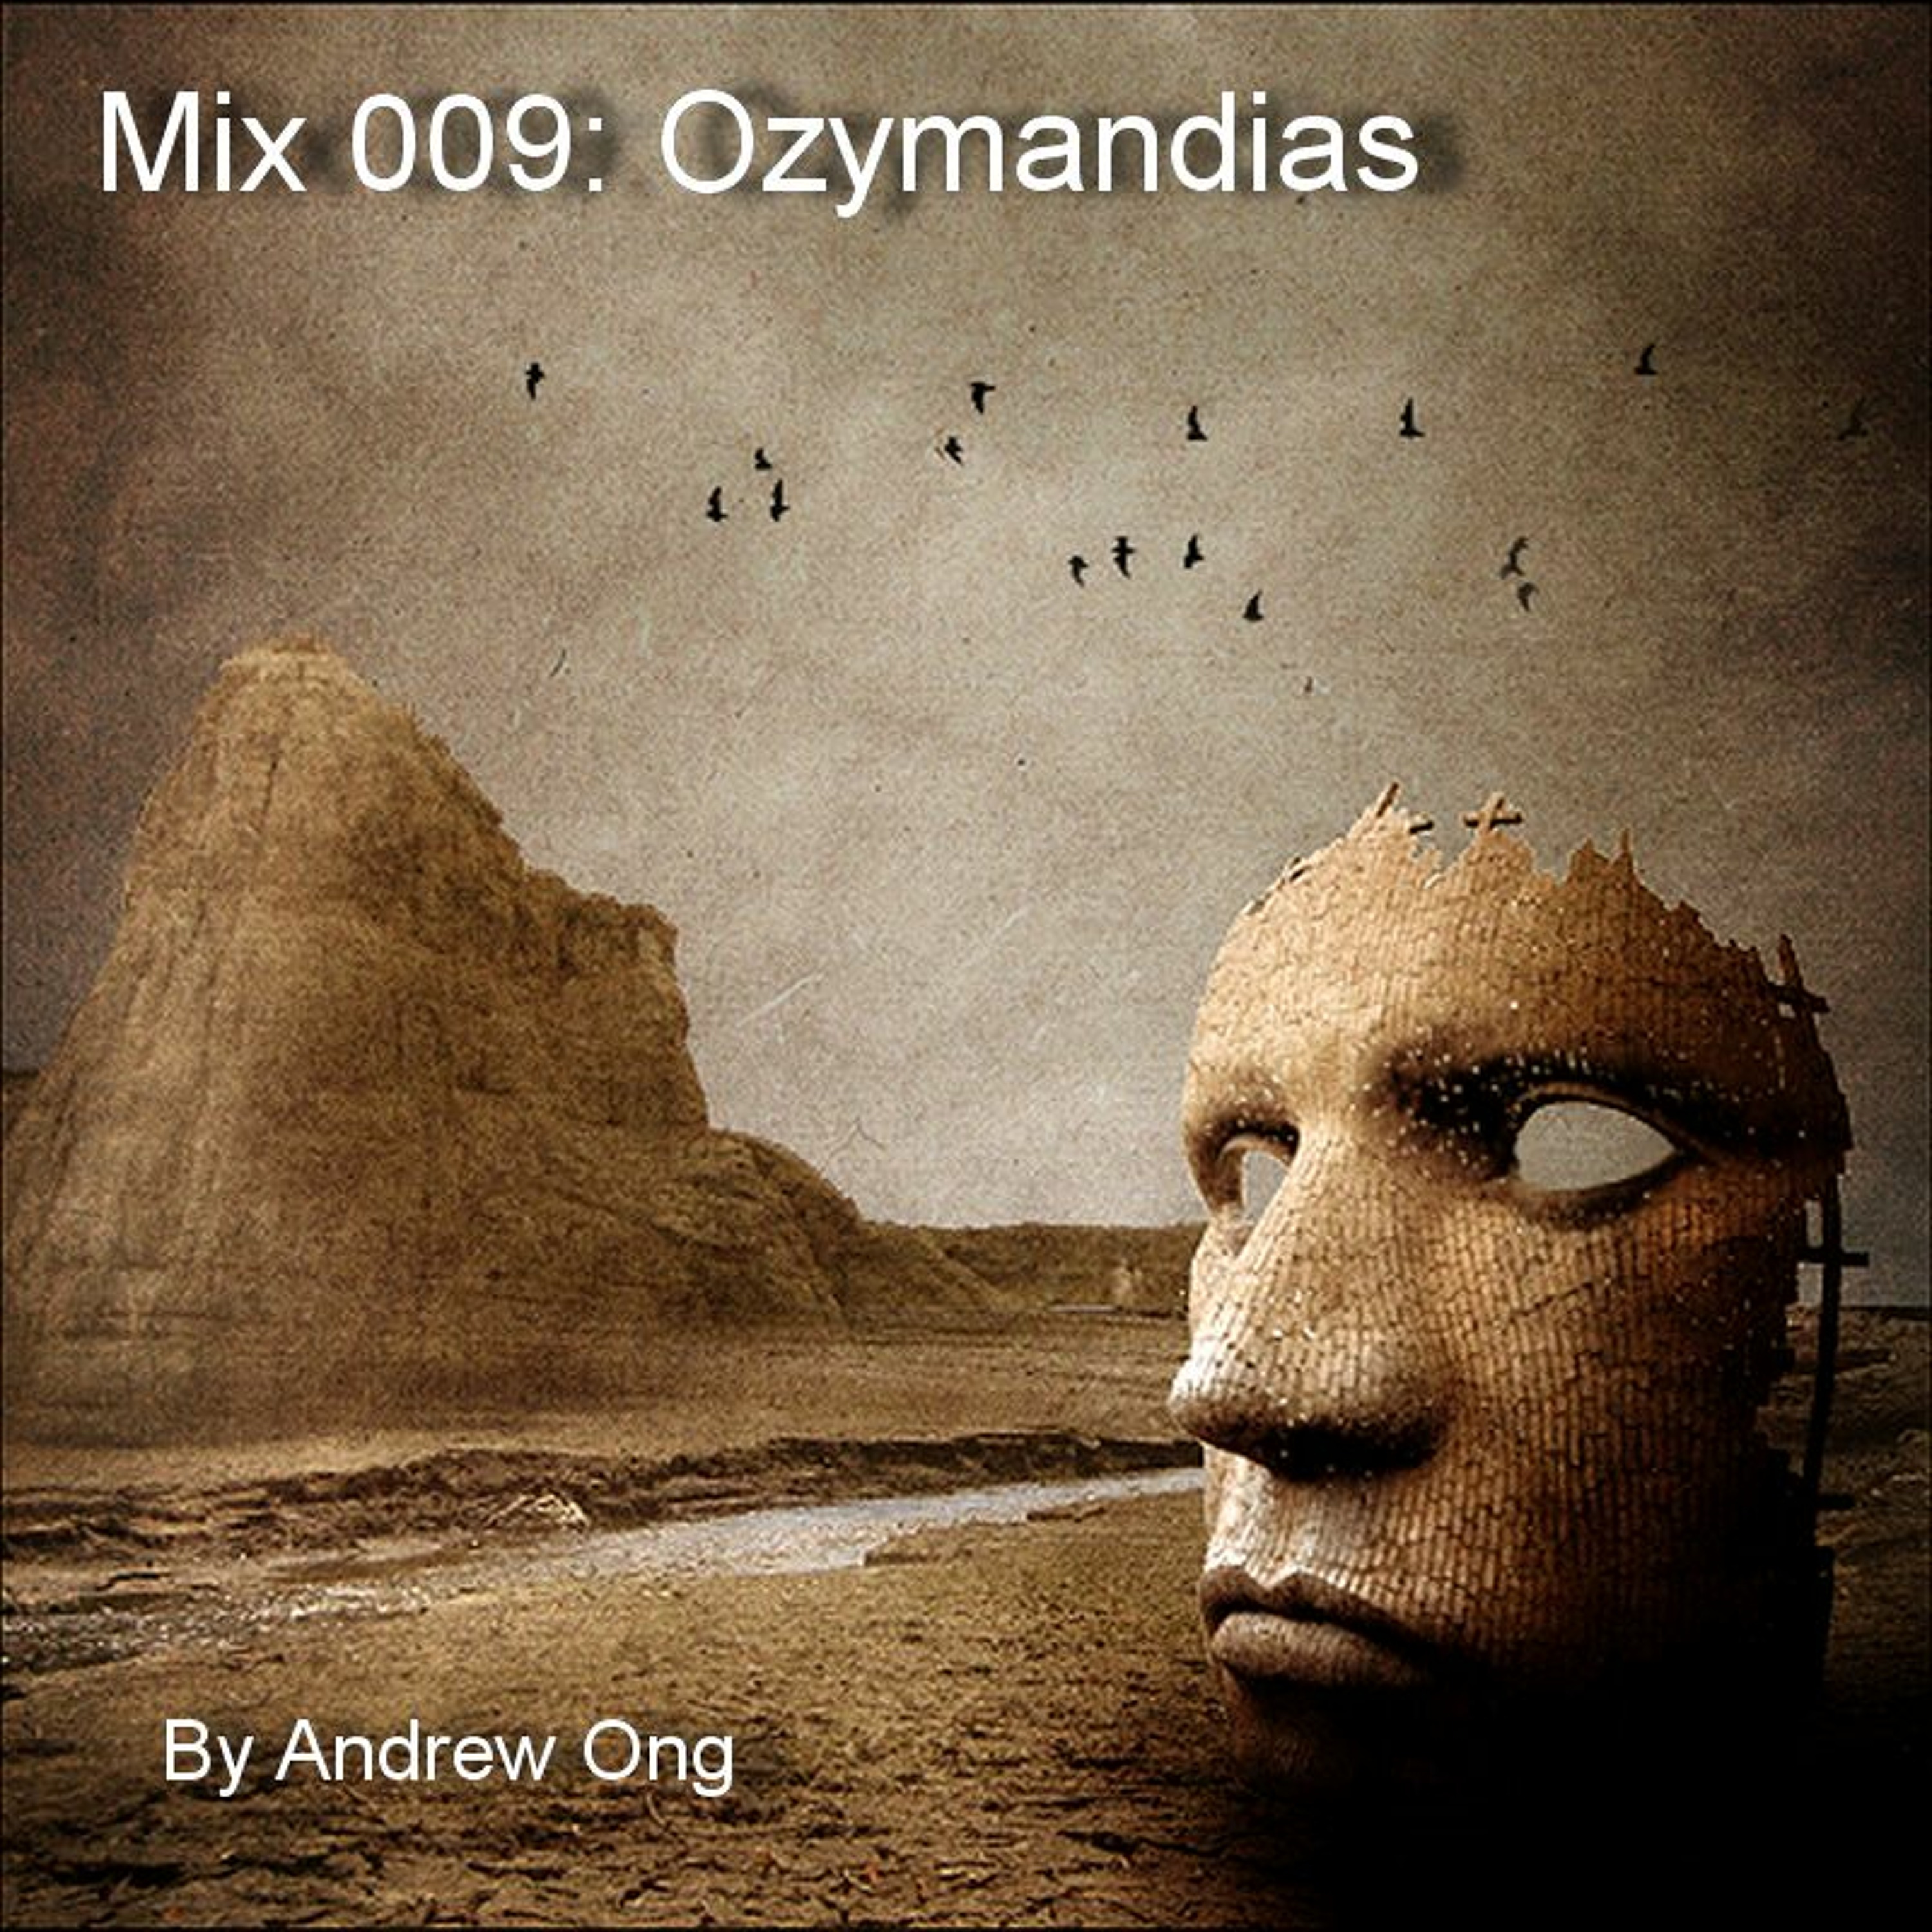 Mix 009 - Ozymandias